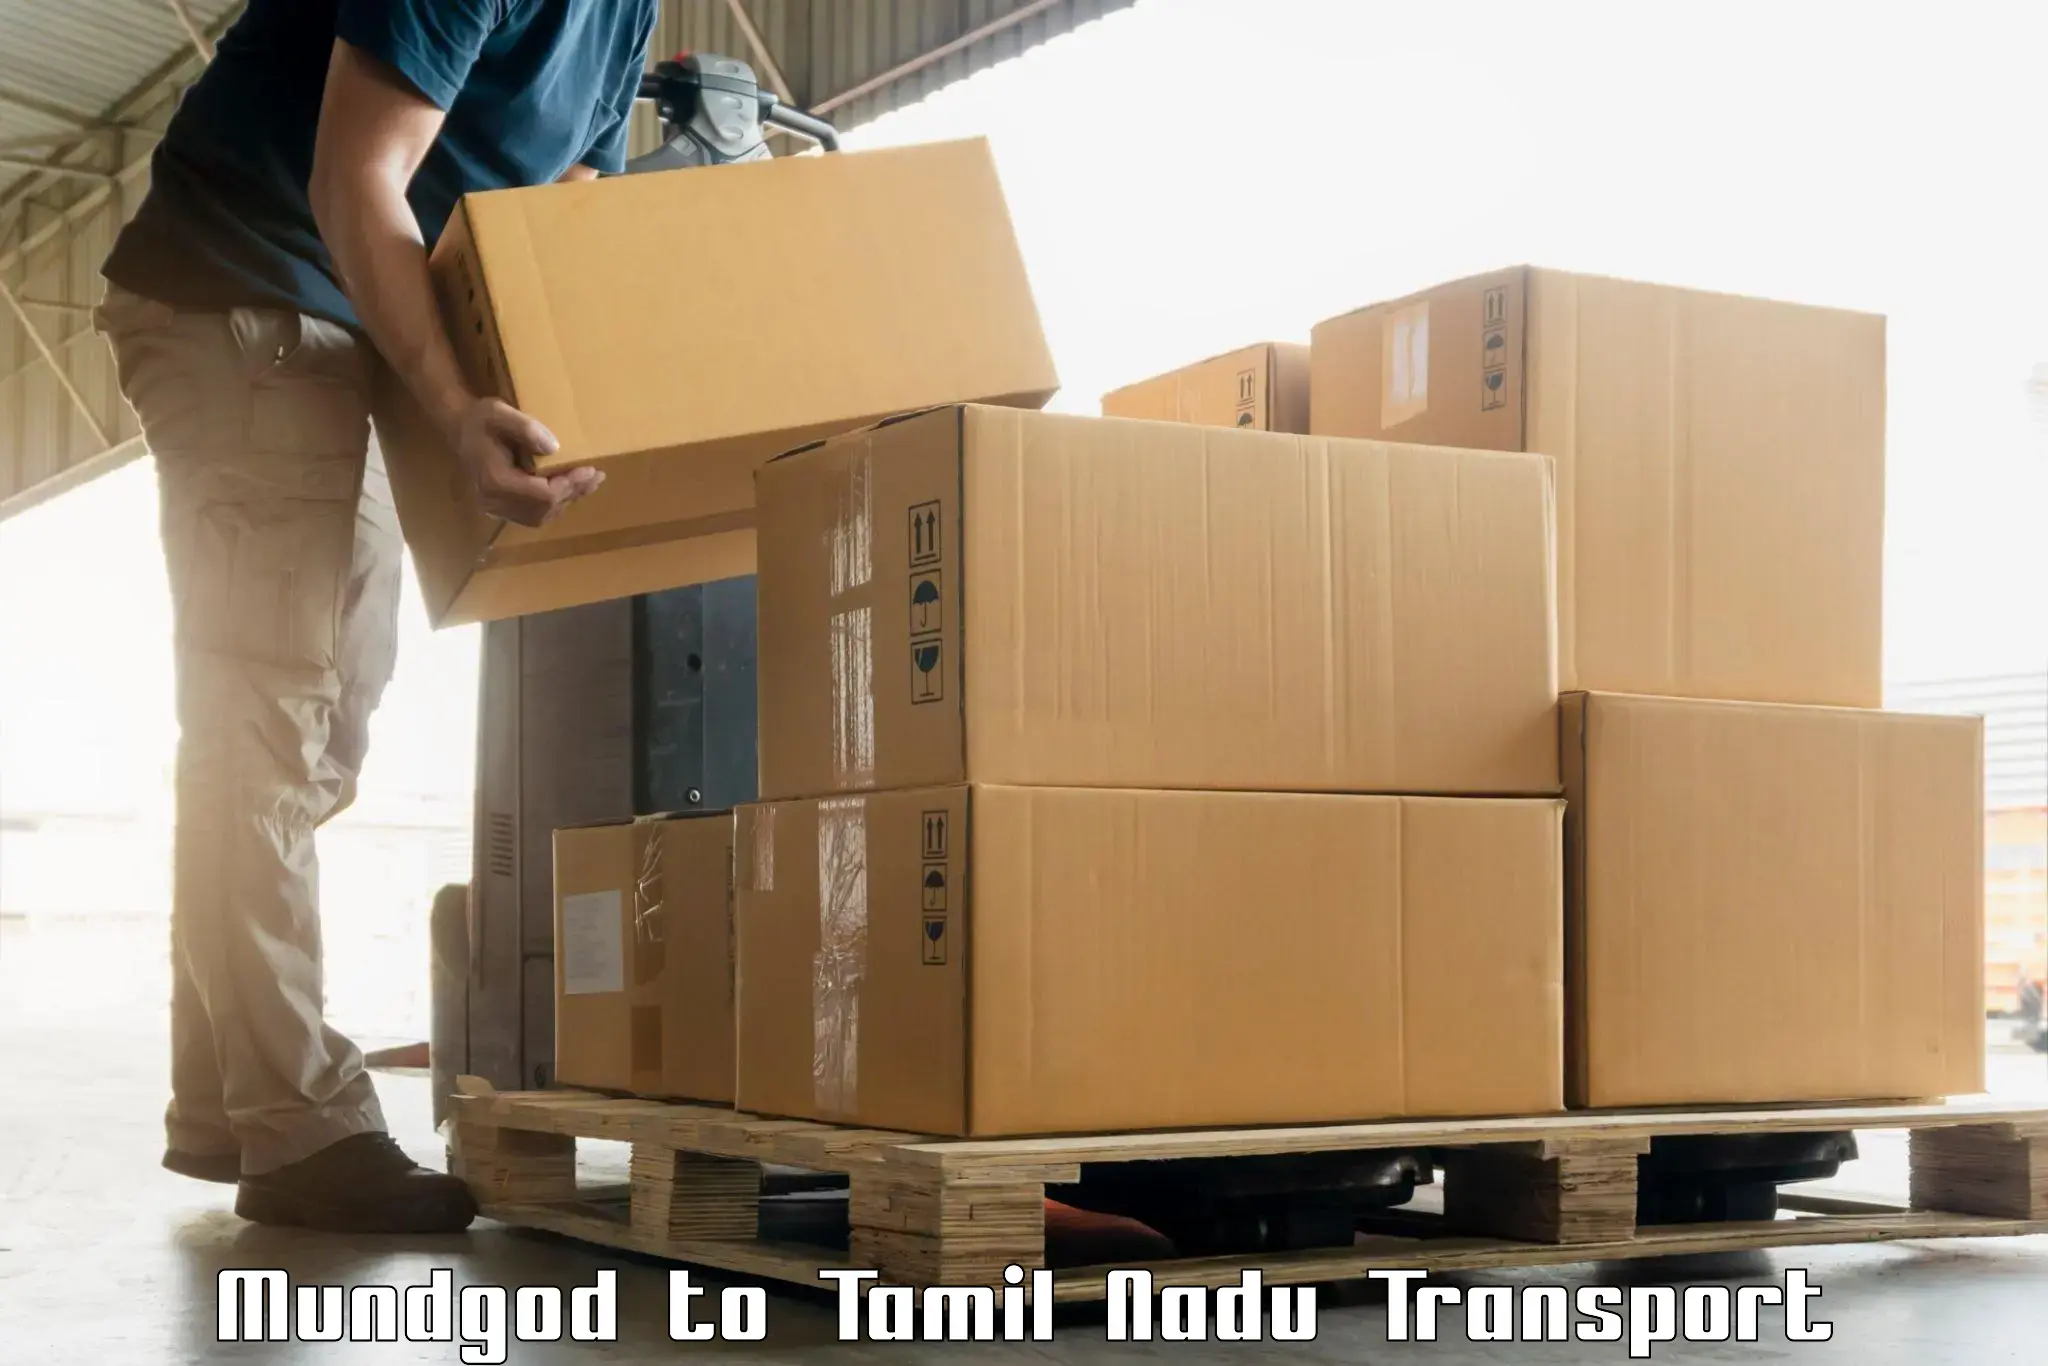 Vehicle transport services Mundgod to Suramangalam